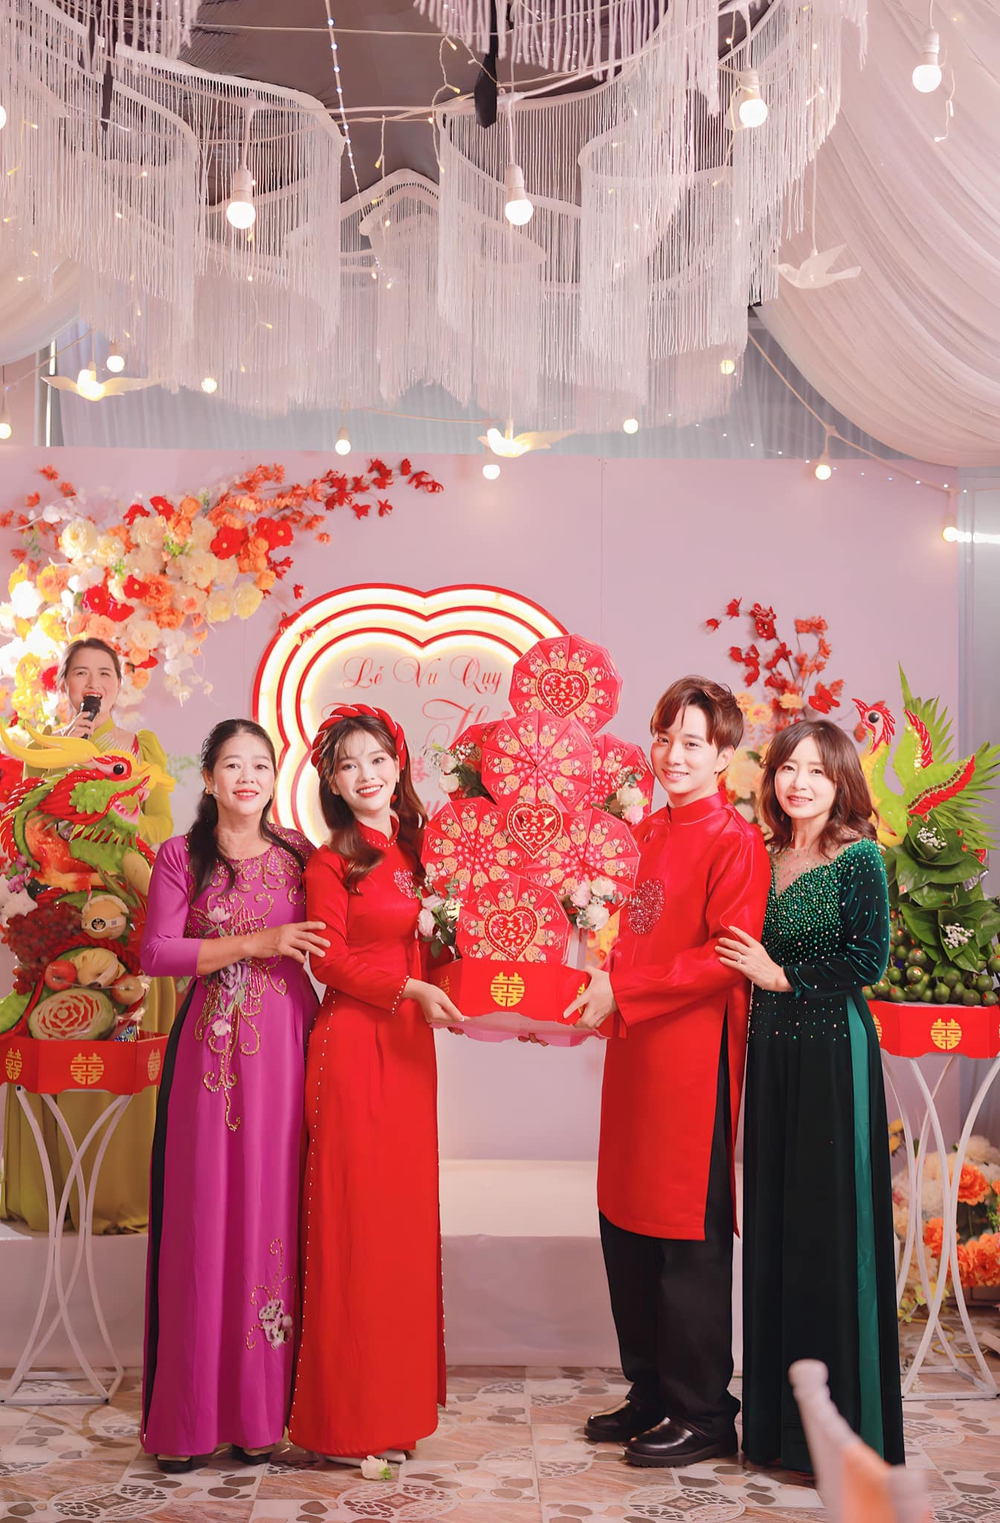 Chân dung mẹ chồng Hàn Quốc nhảy trong đám cưới ở Hà Tĩnh: U60 trẻ như chị của con dâu - Ảnh 2.